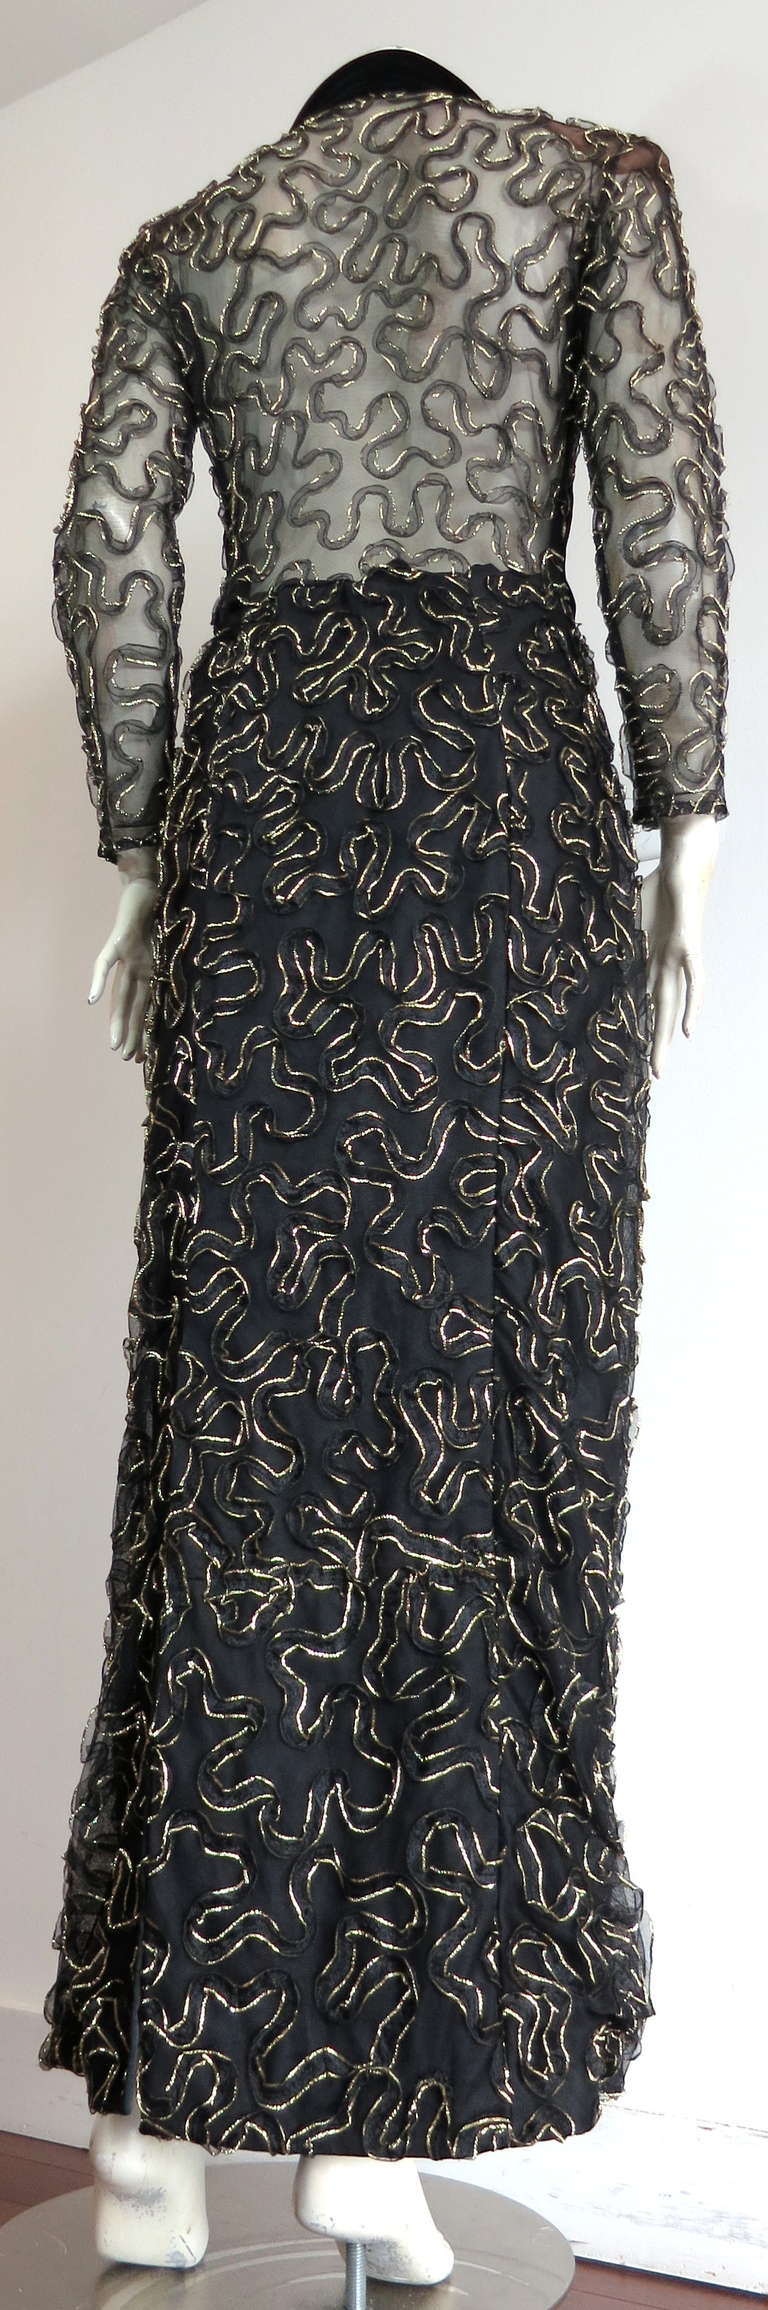 1980's JACQUELINE DE RIBES Couture evening dress For Sale 1